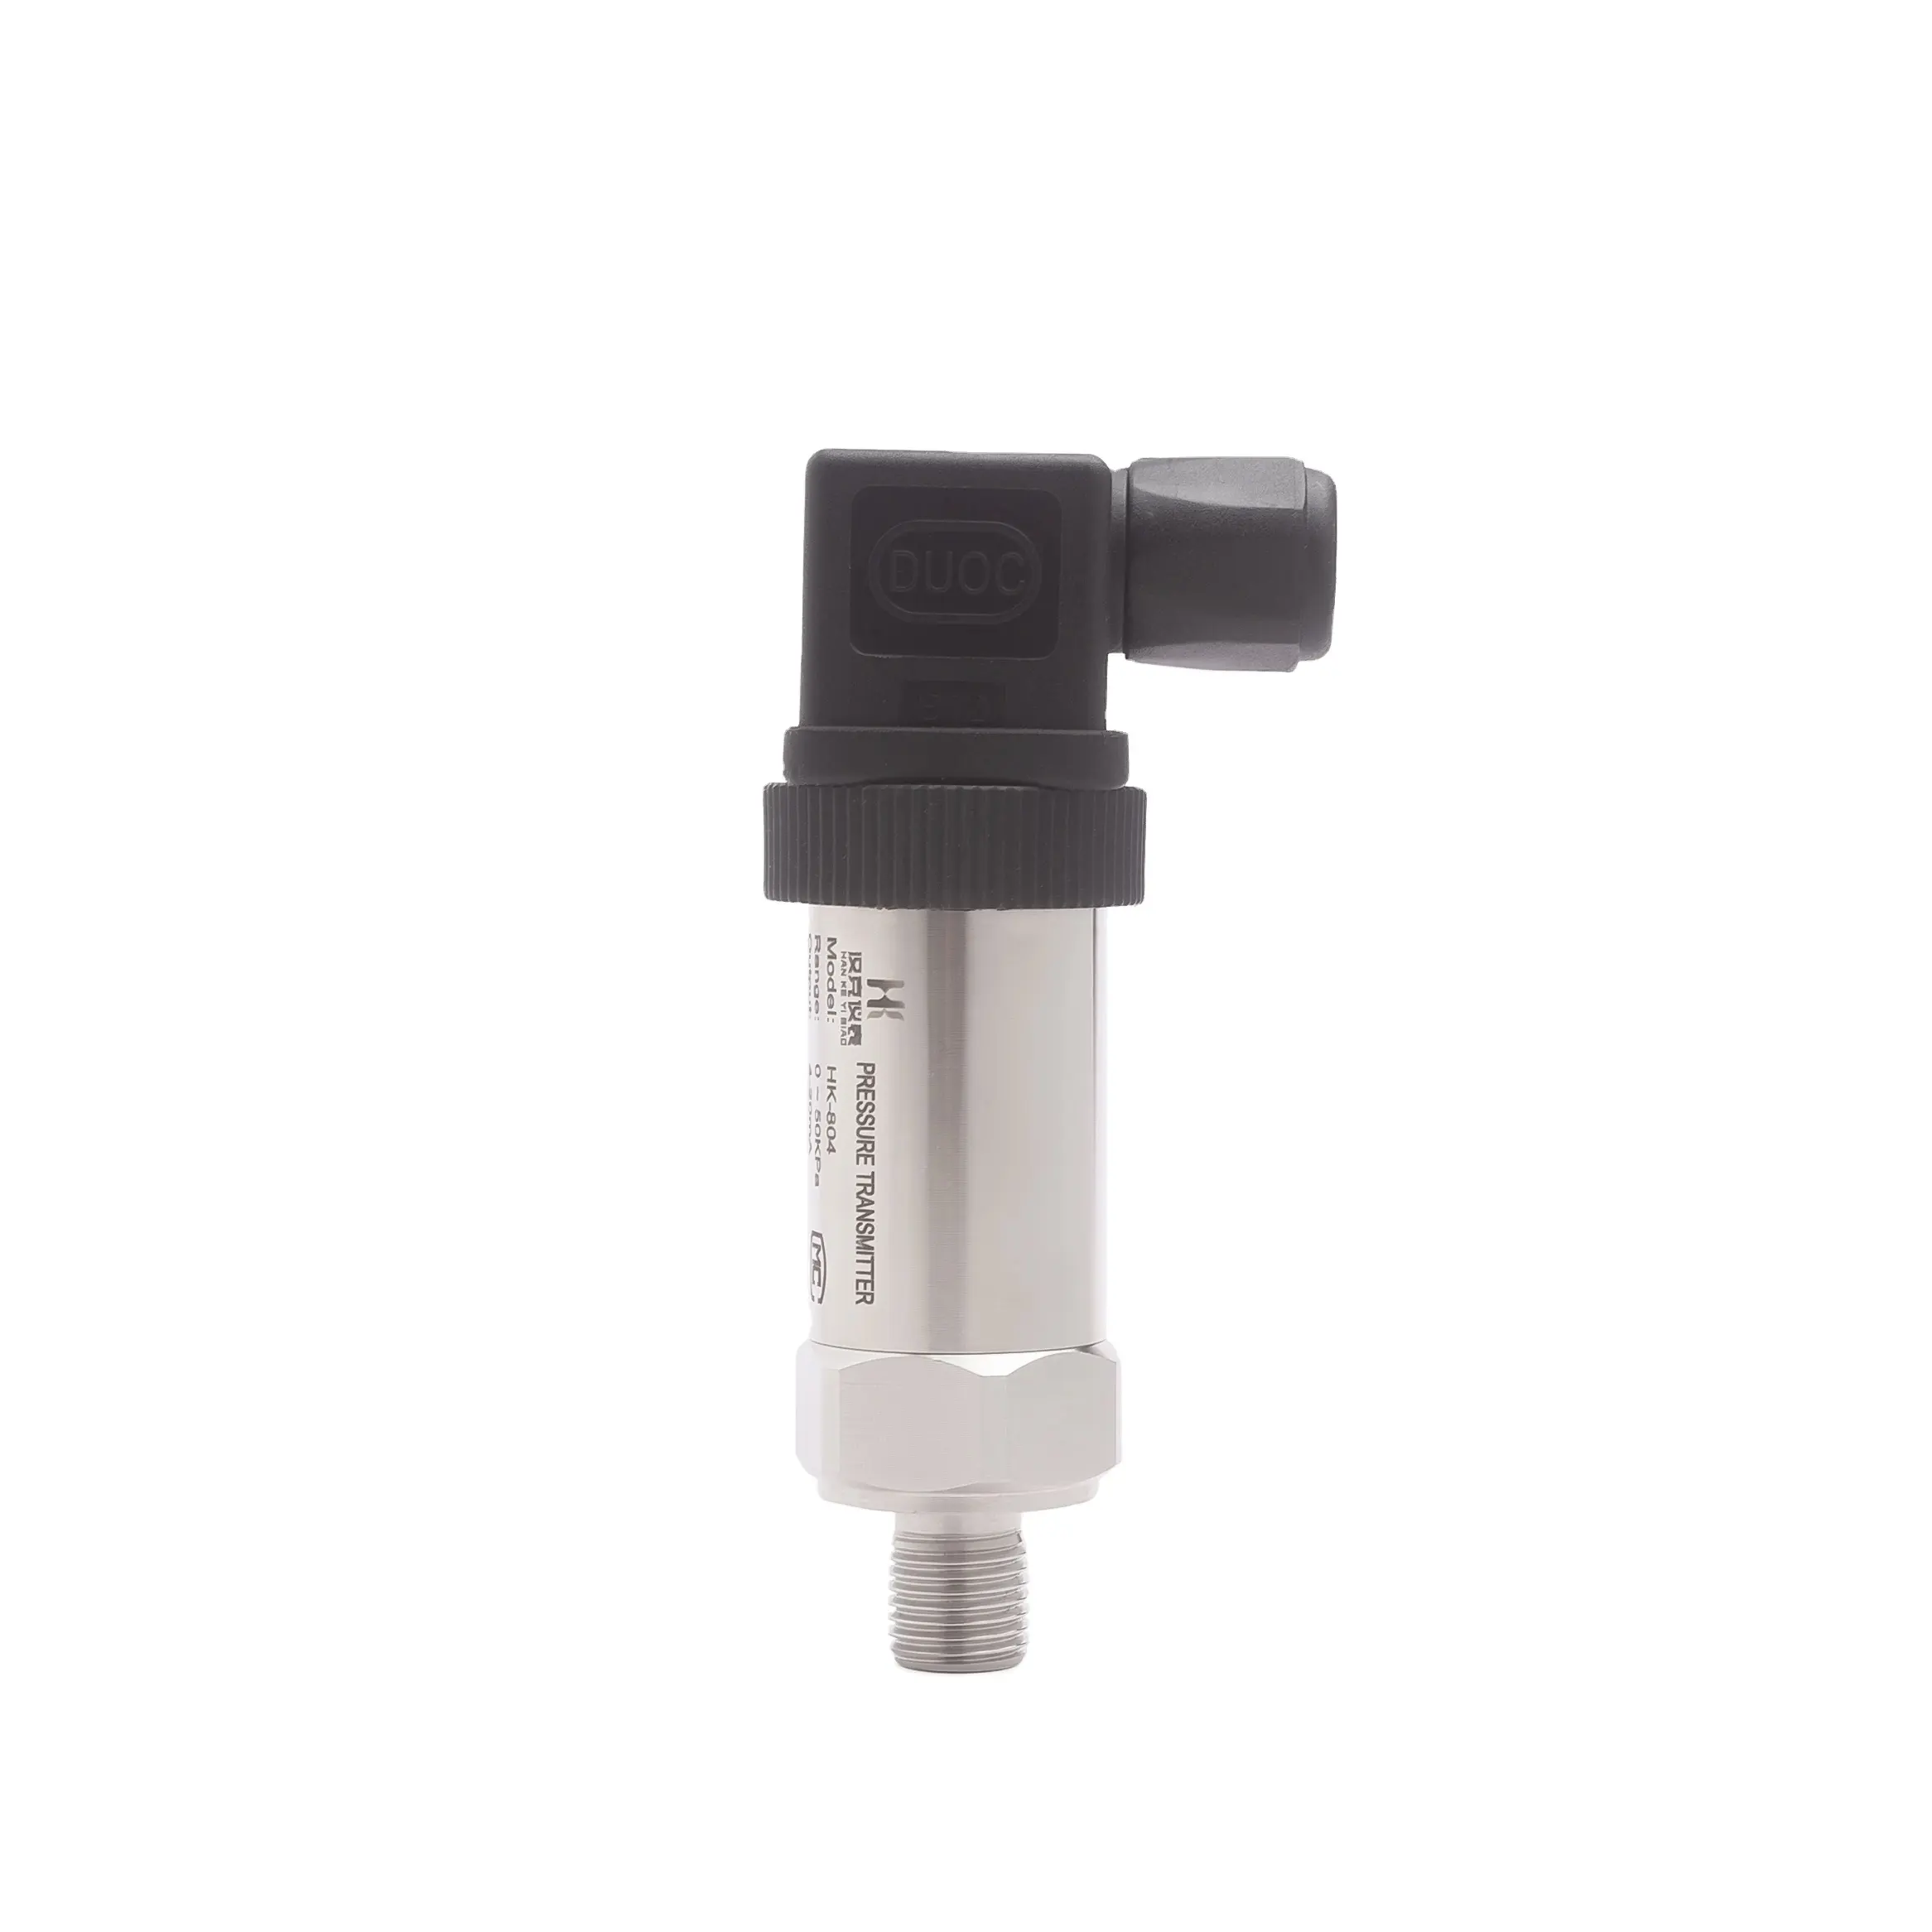 Hank 4-20mA RS485 Water Pressure Sensor/Absolute Vacuum Pressure Transmitter